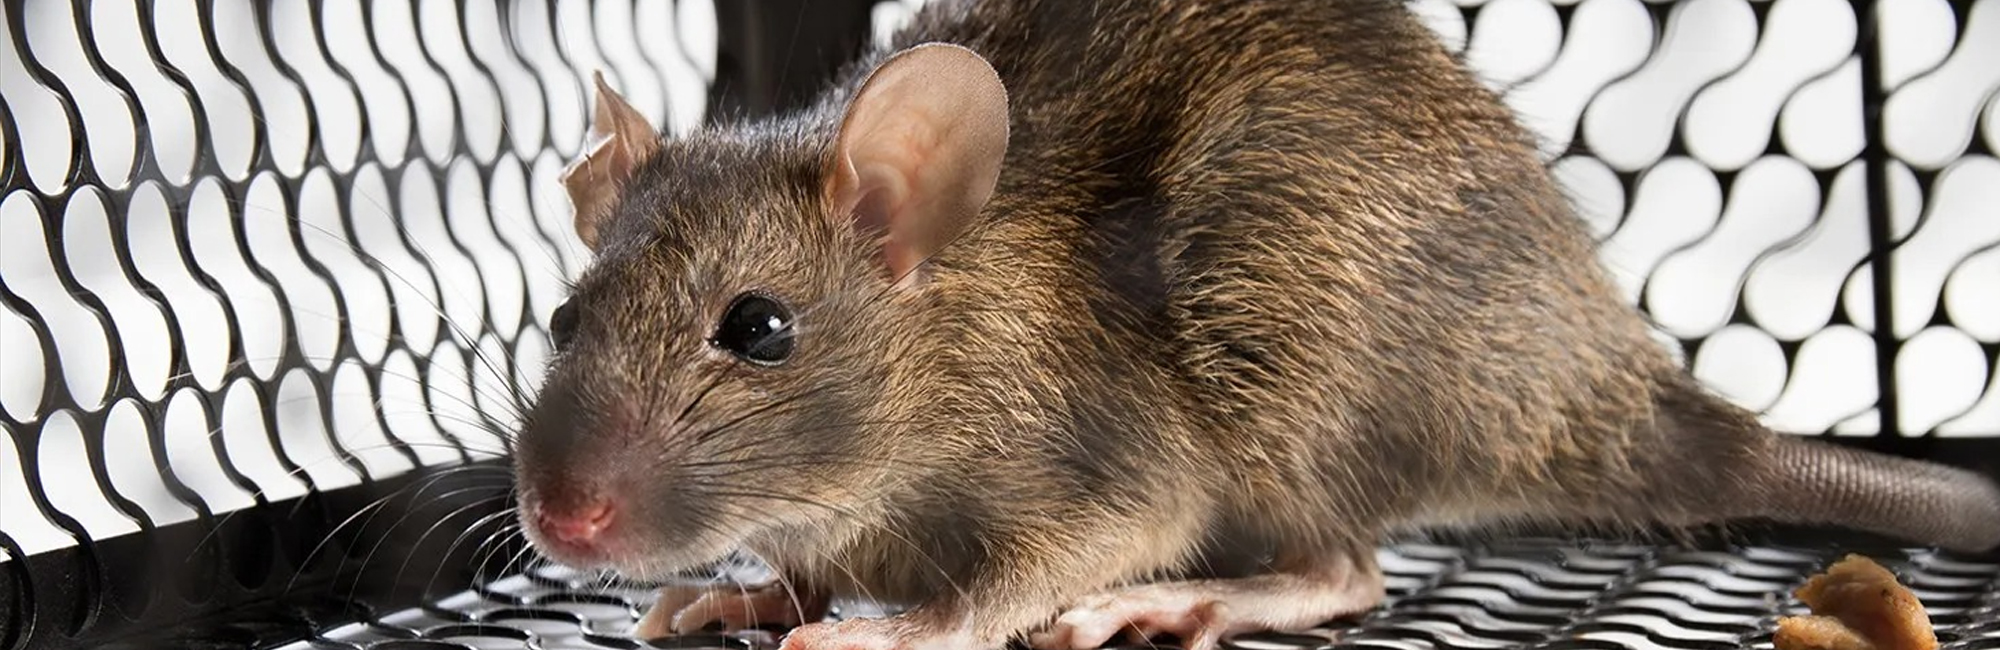 Derattizzazione topi e ratti